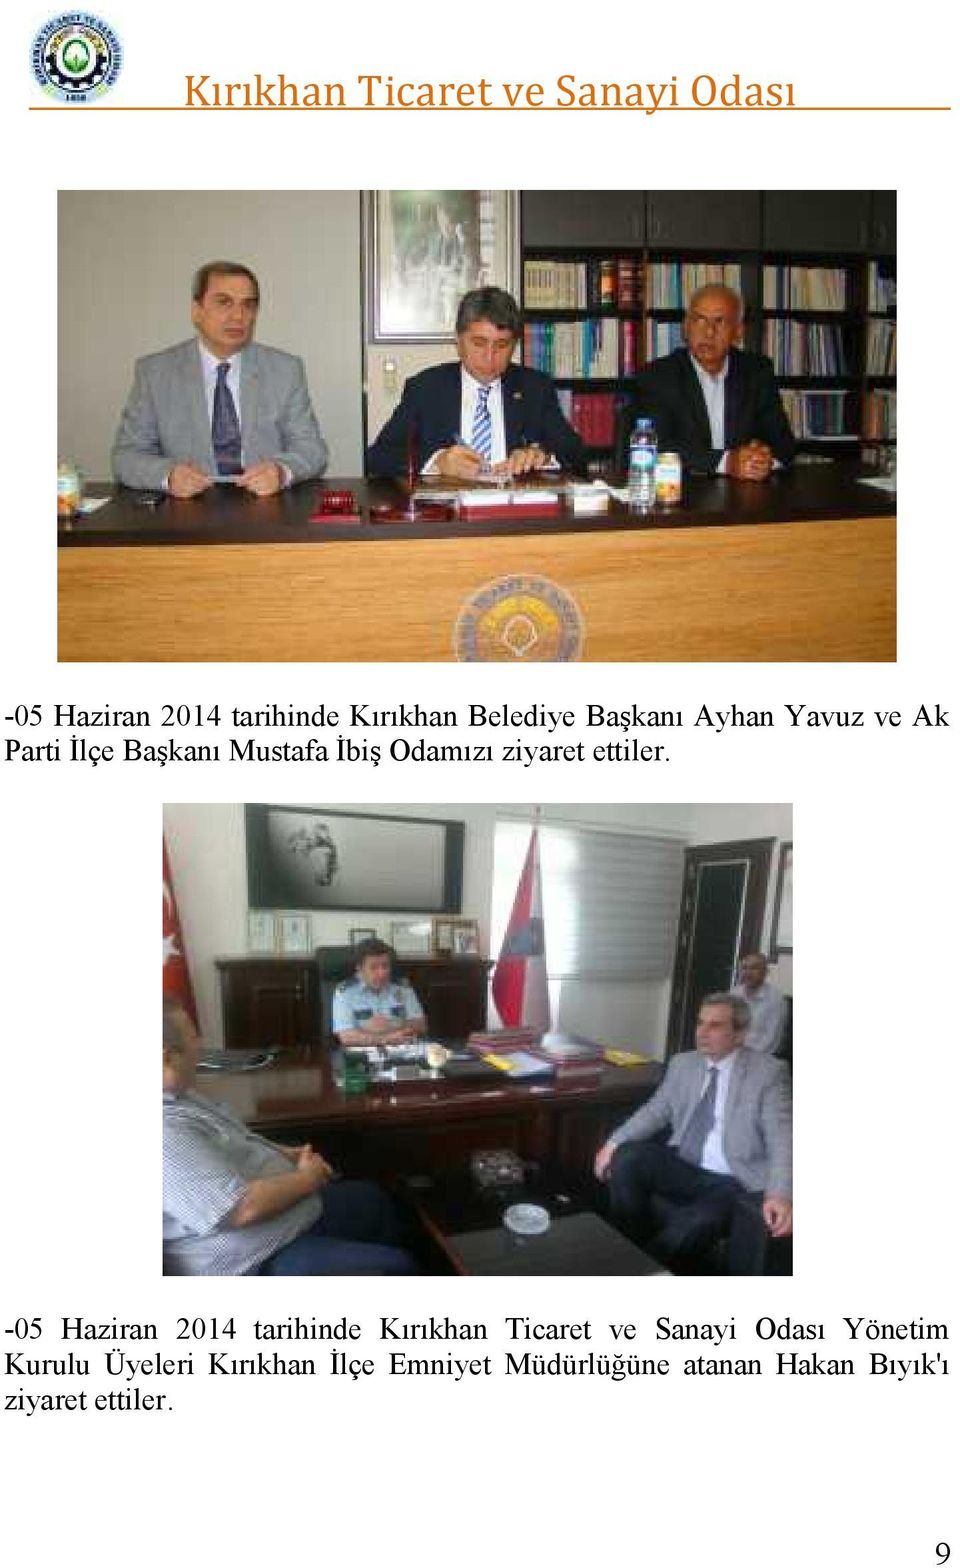 -05 Haziran 2014 tarihinde Kırıkhan Ticaret ve Sanayi Odası Yönetim